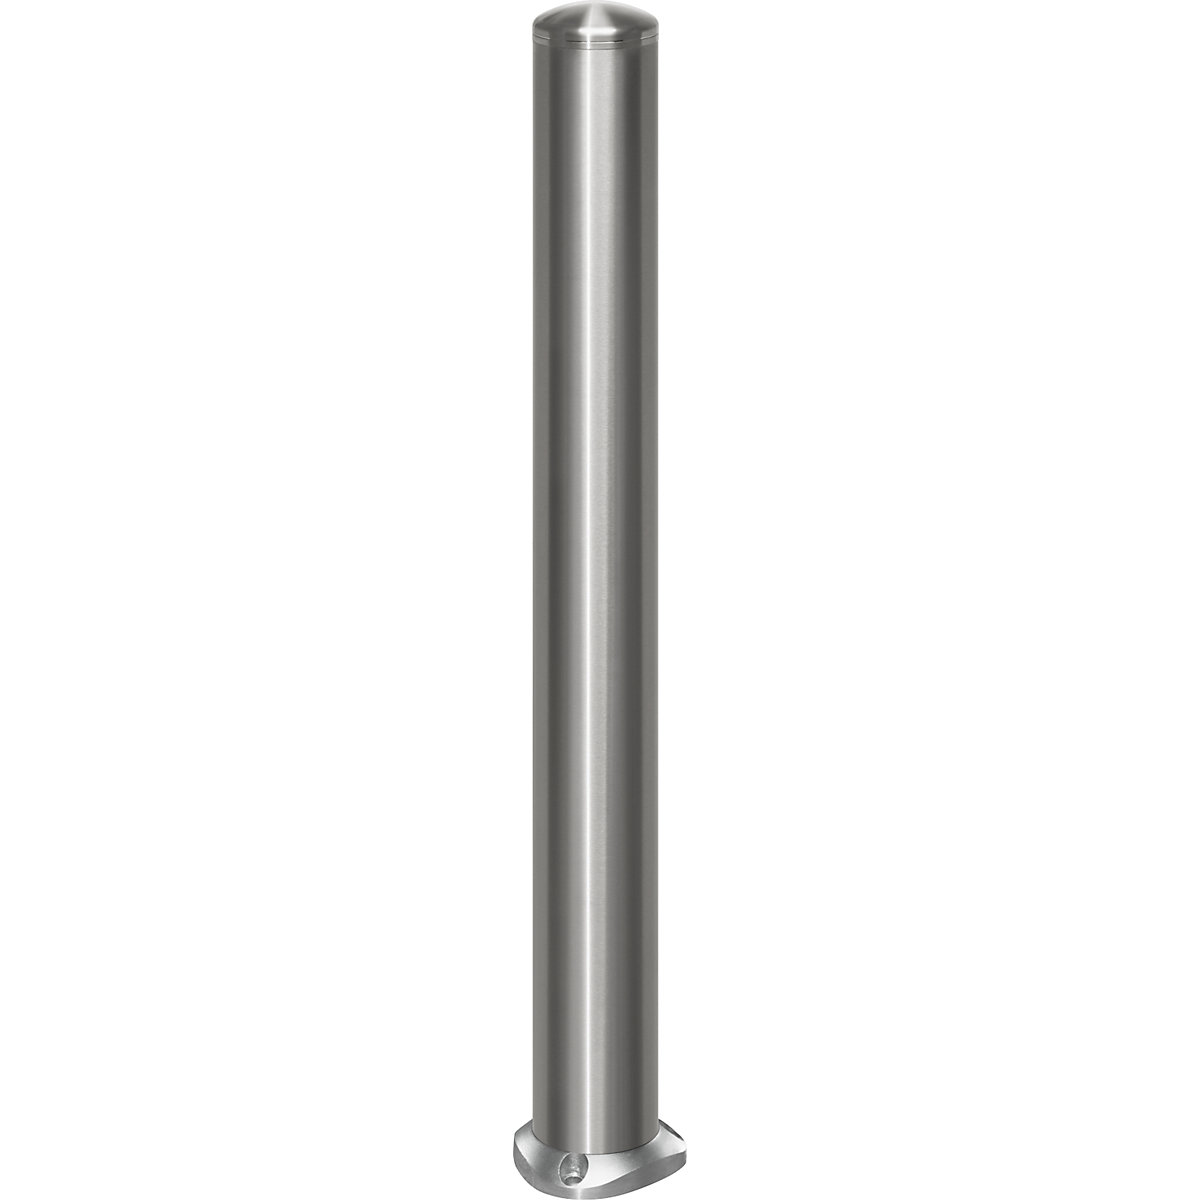 Poste barrera de acero inoxidable, con cubierta de remate, placa base para atornillar, Ø 102 mm, autoenderezable